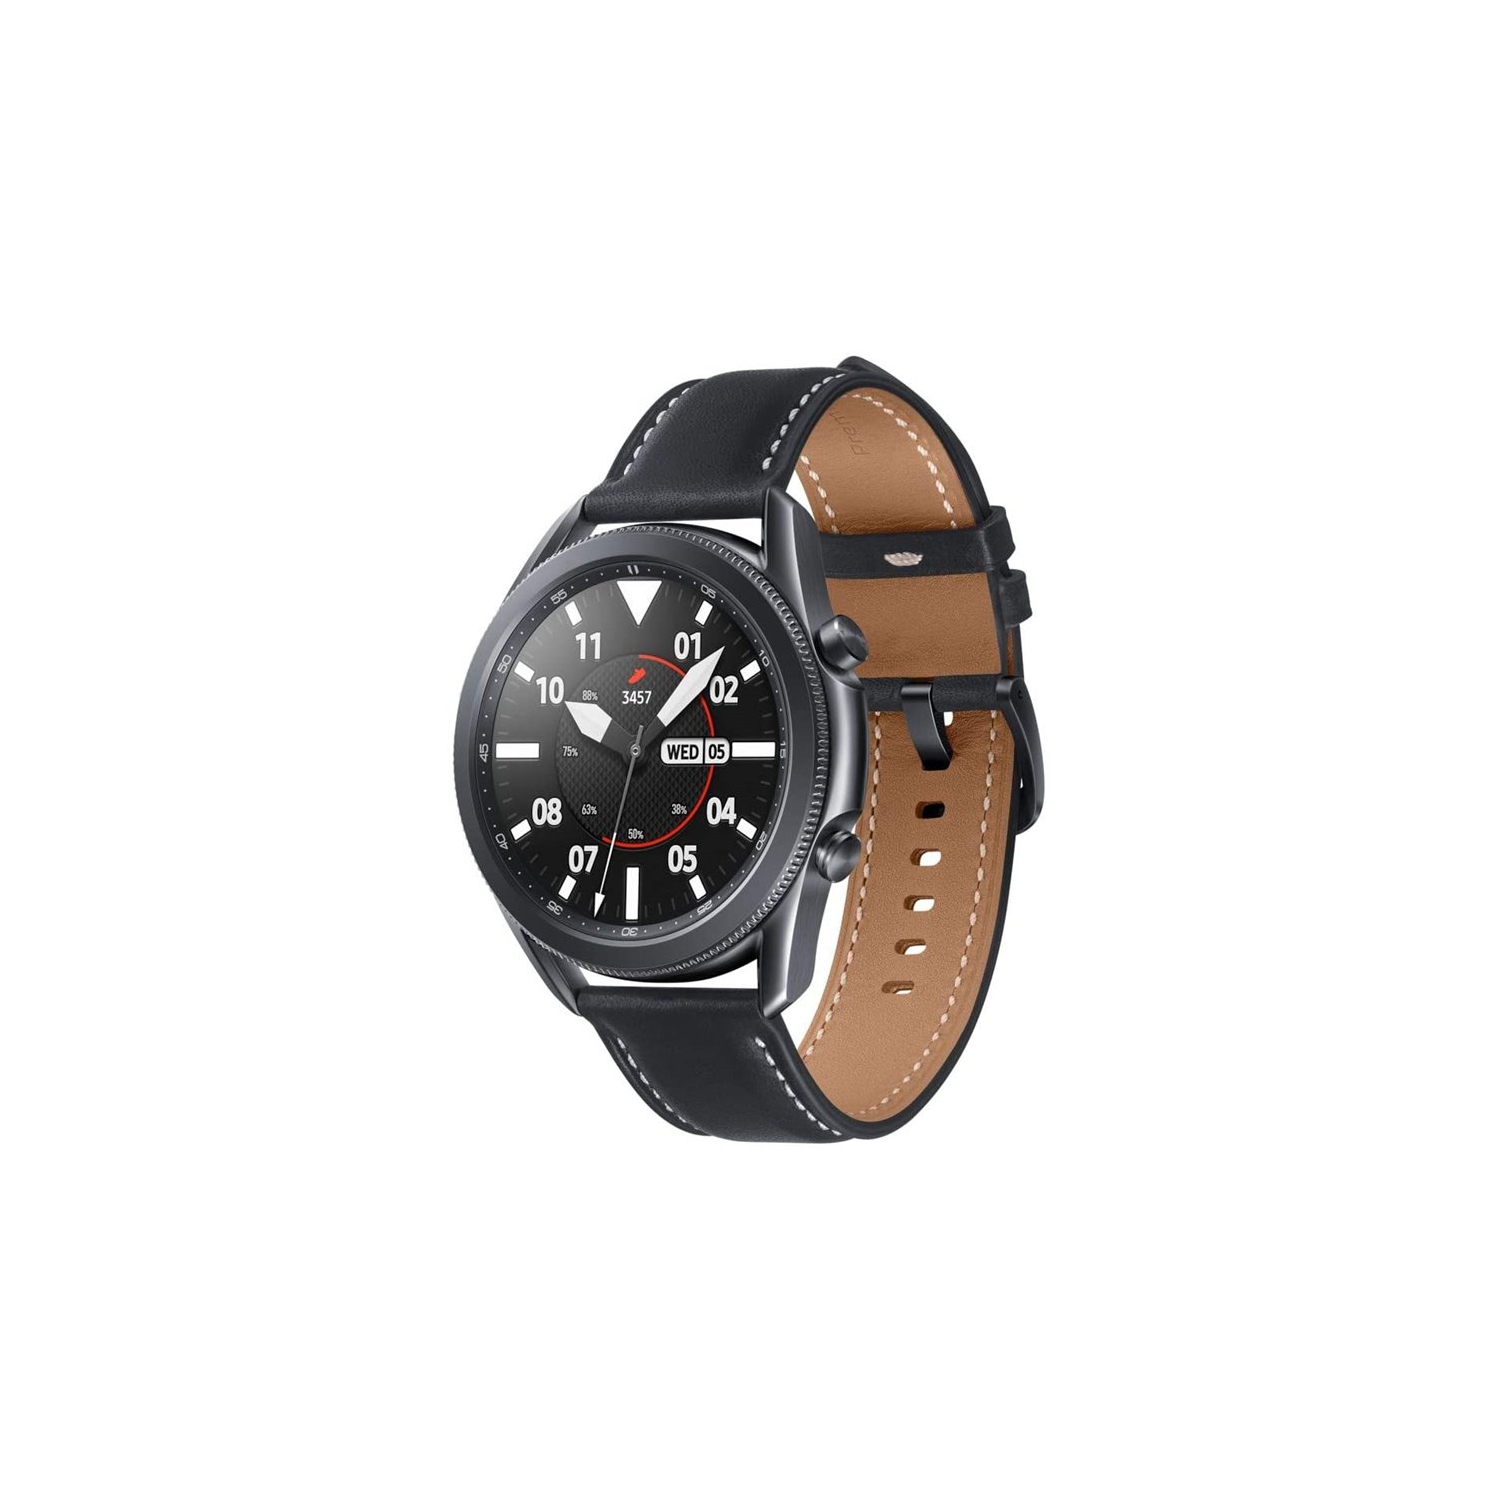 Samsung Galaxy Watch 3 SM-R840 (45mm) - Mystic Black [NEW in Box